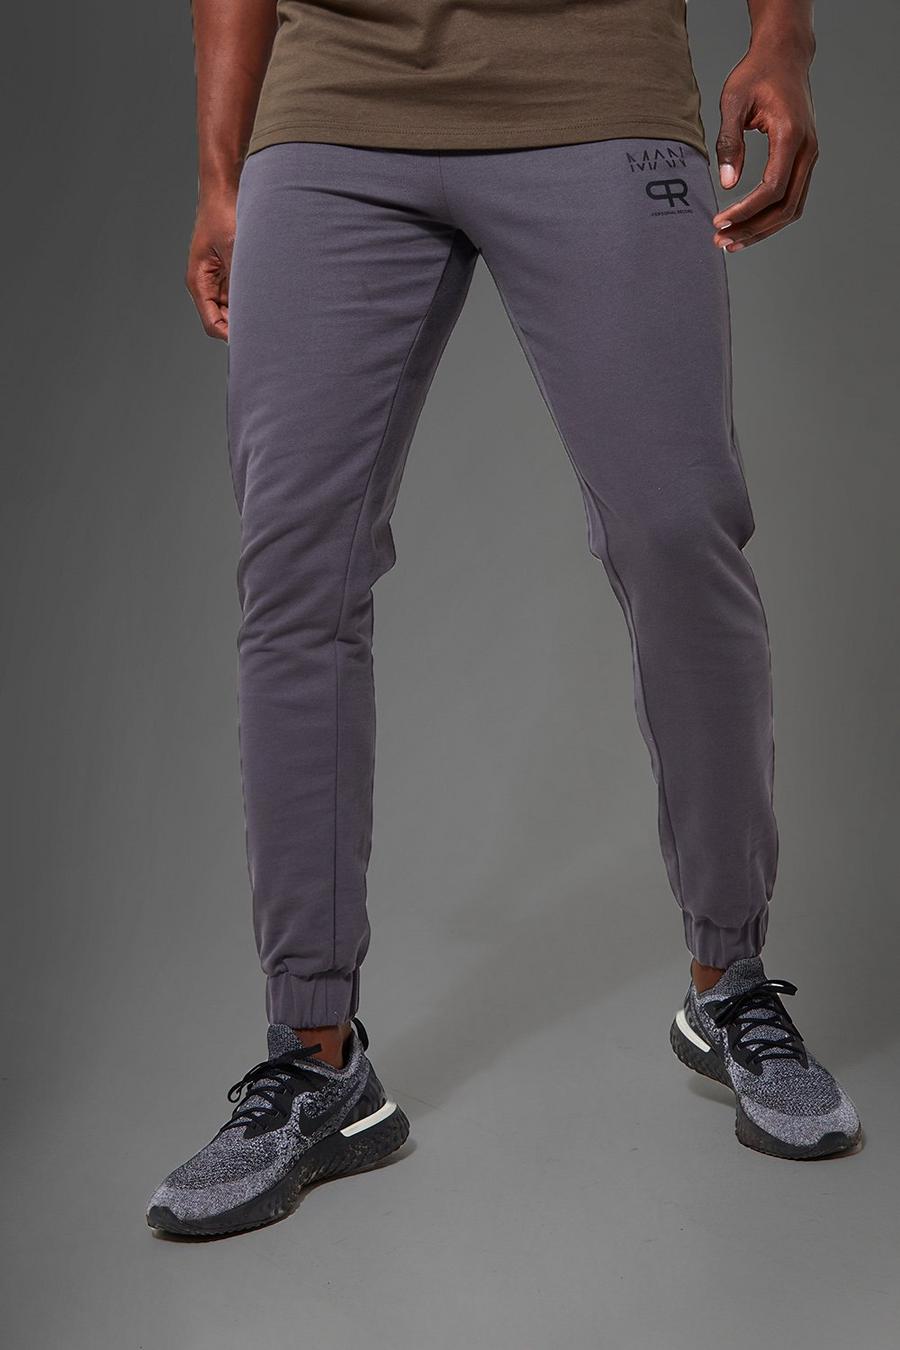 Pantaloni tuta Man Active Gym con stampa riflettente, Charcoal gris